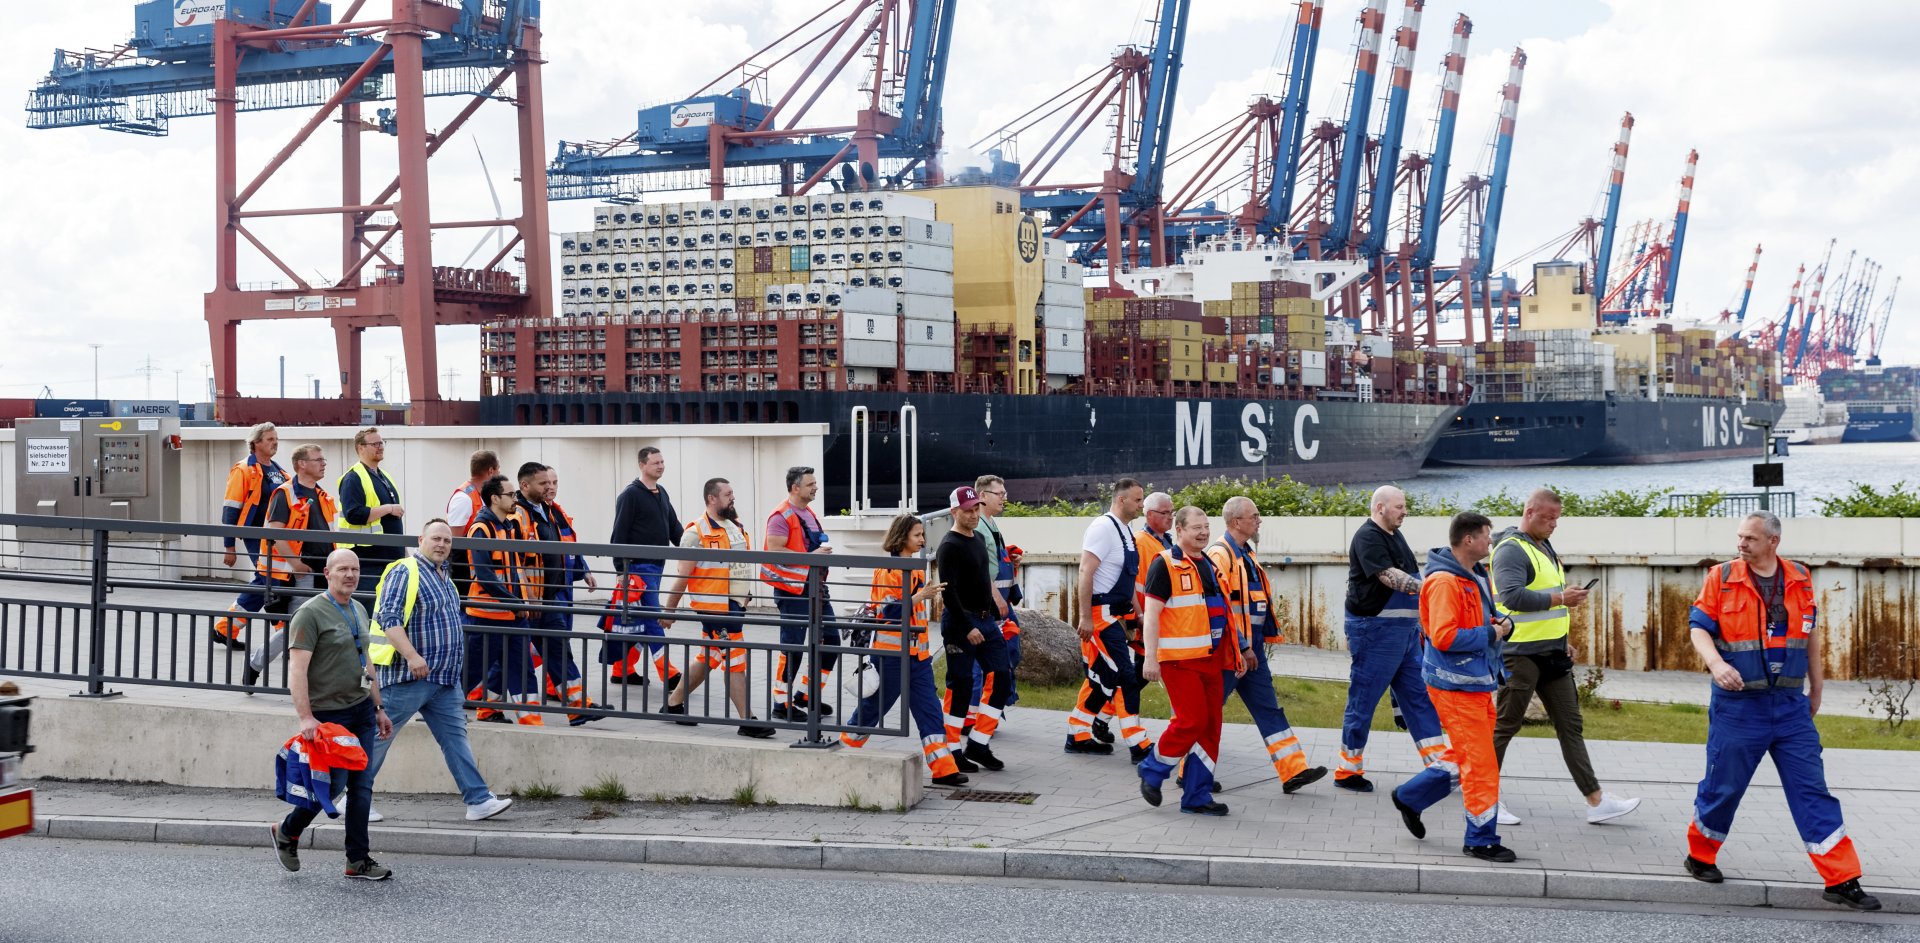 В порта не могат нито да влизат, нито да излизат големи товарни кораби от 10 часа местно време до второ разпореждане (снимка архив от стачка в хамбургското пристанище през юни 2022 г.)